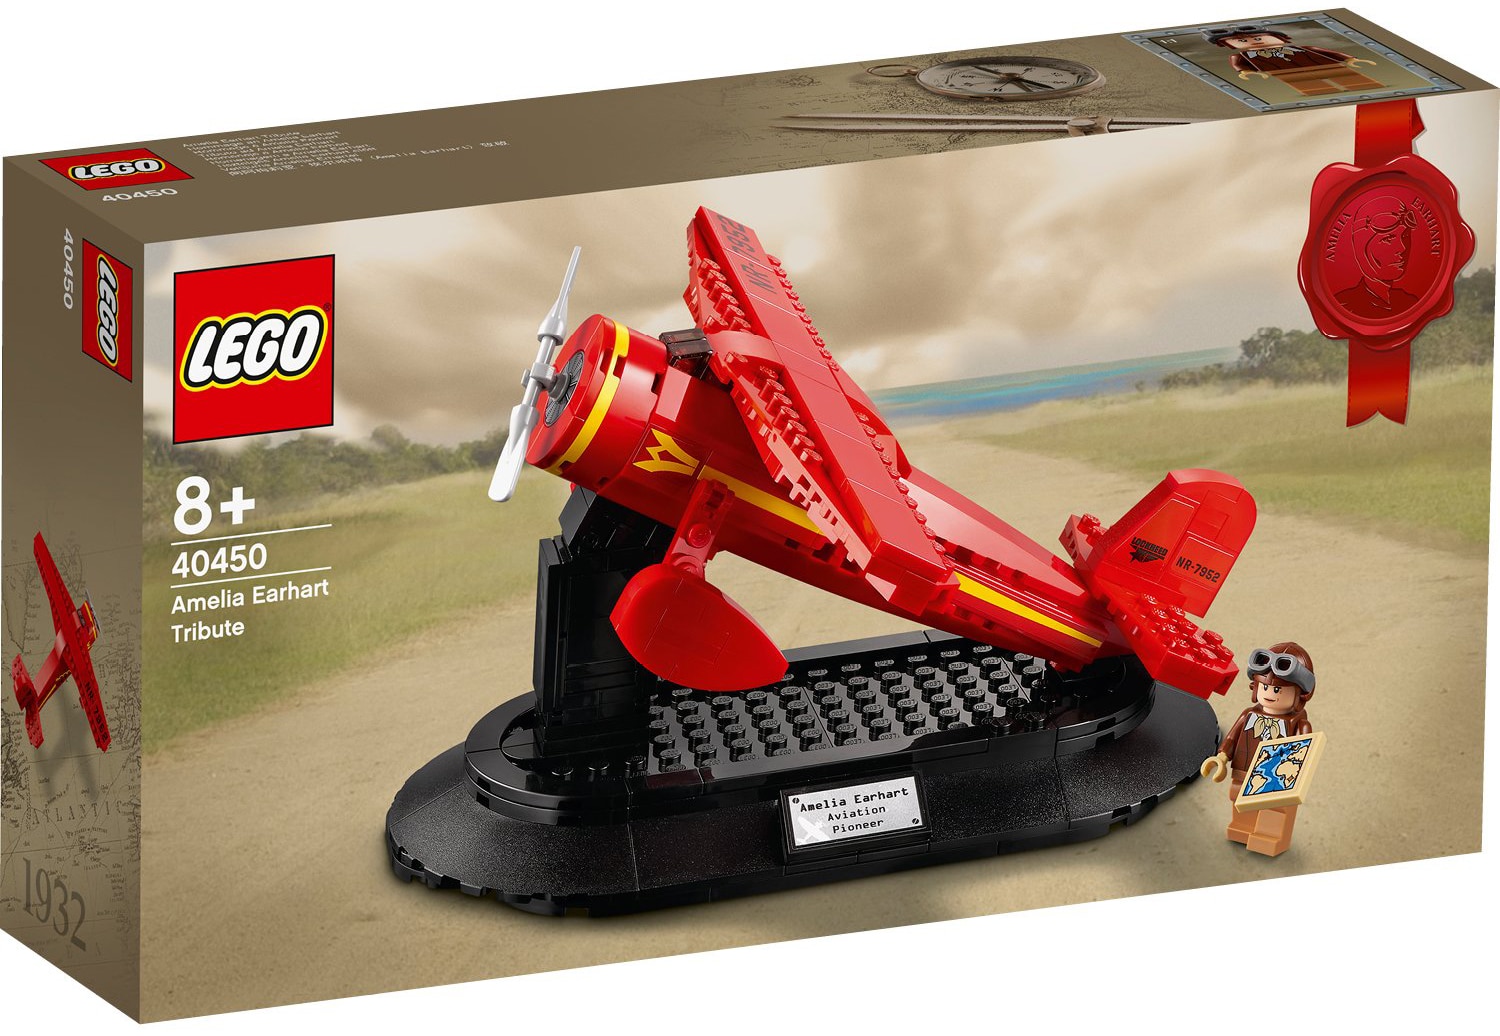 LEGO 40450 Amelia Earhart Tribute GWP